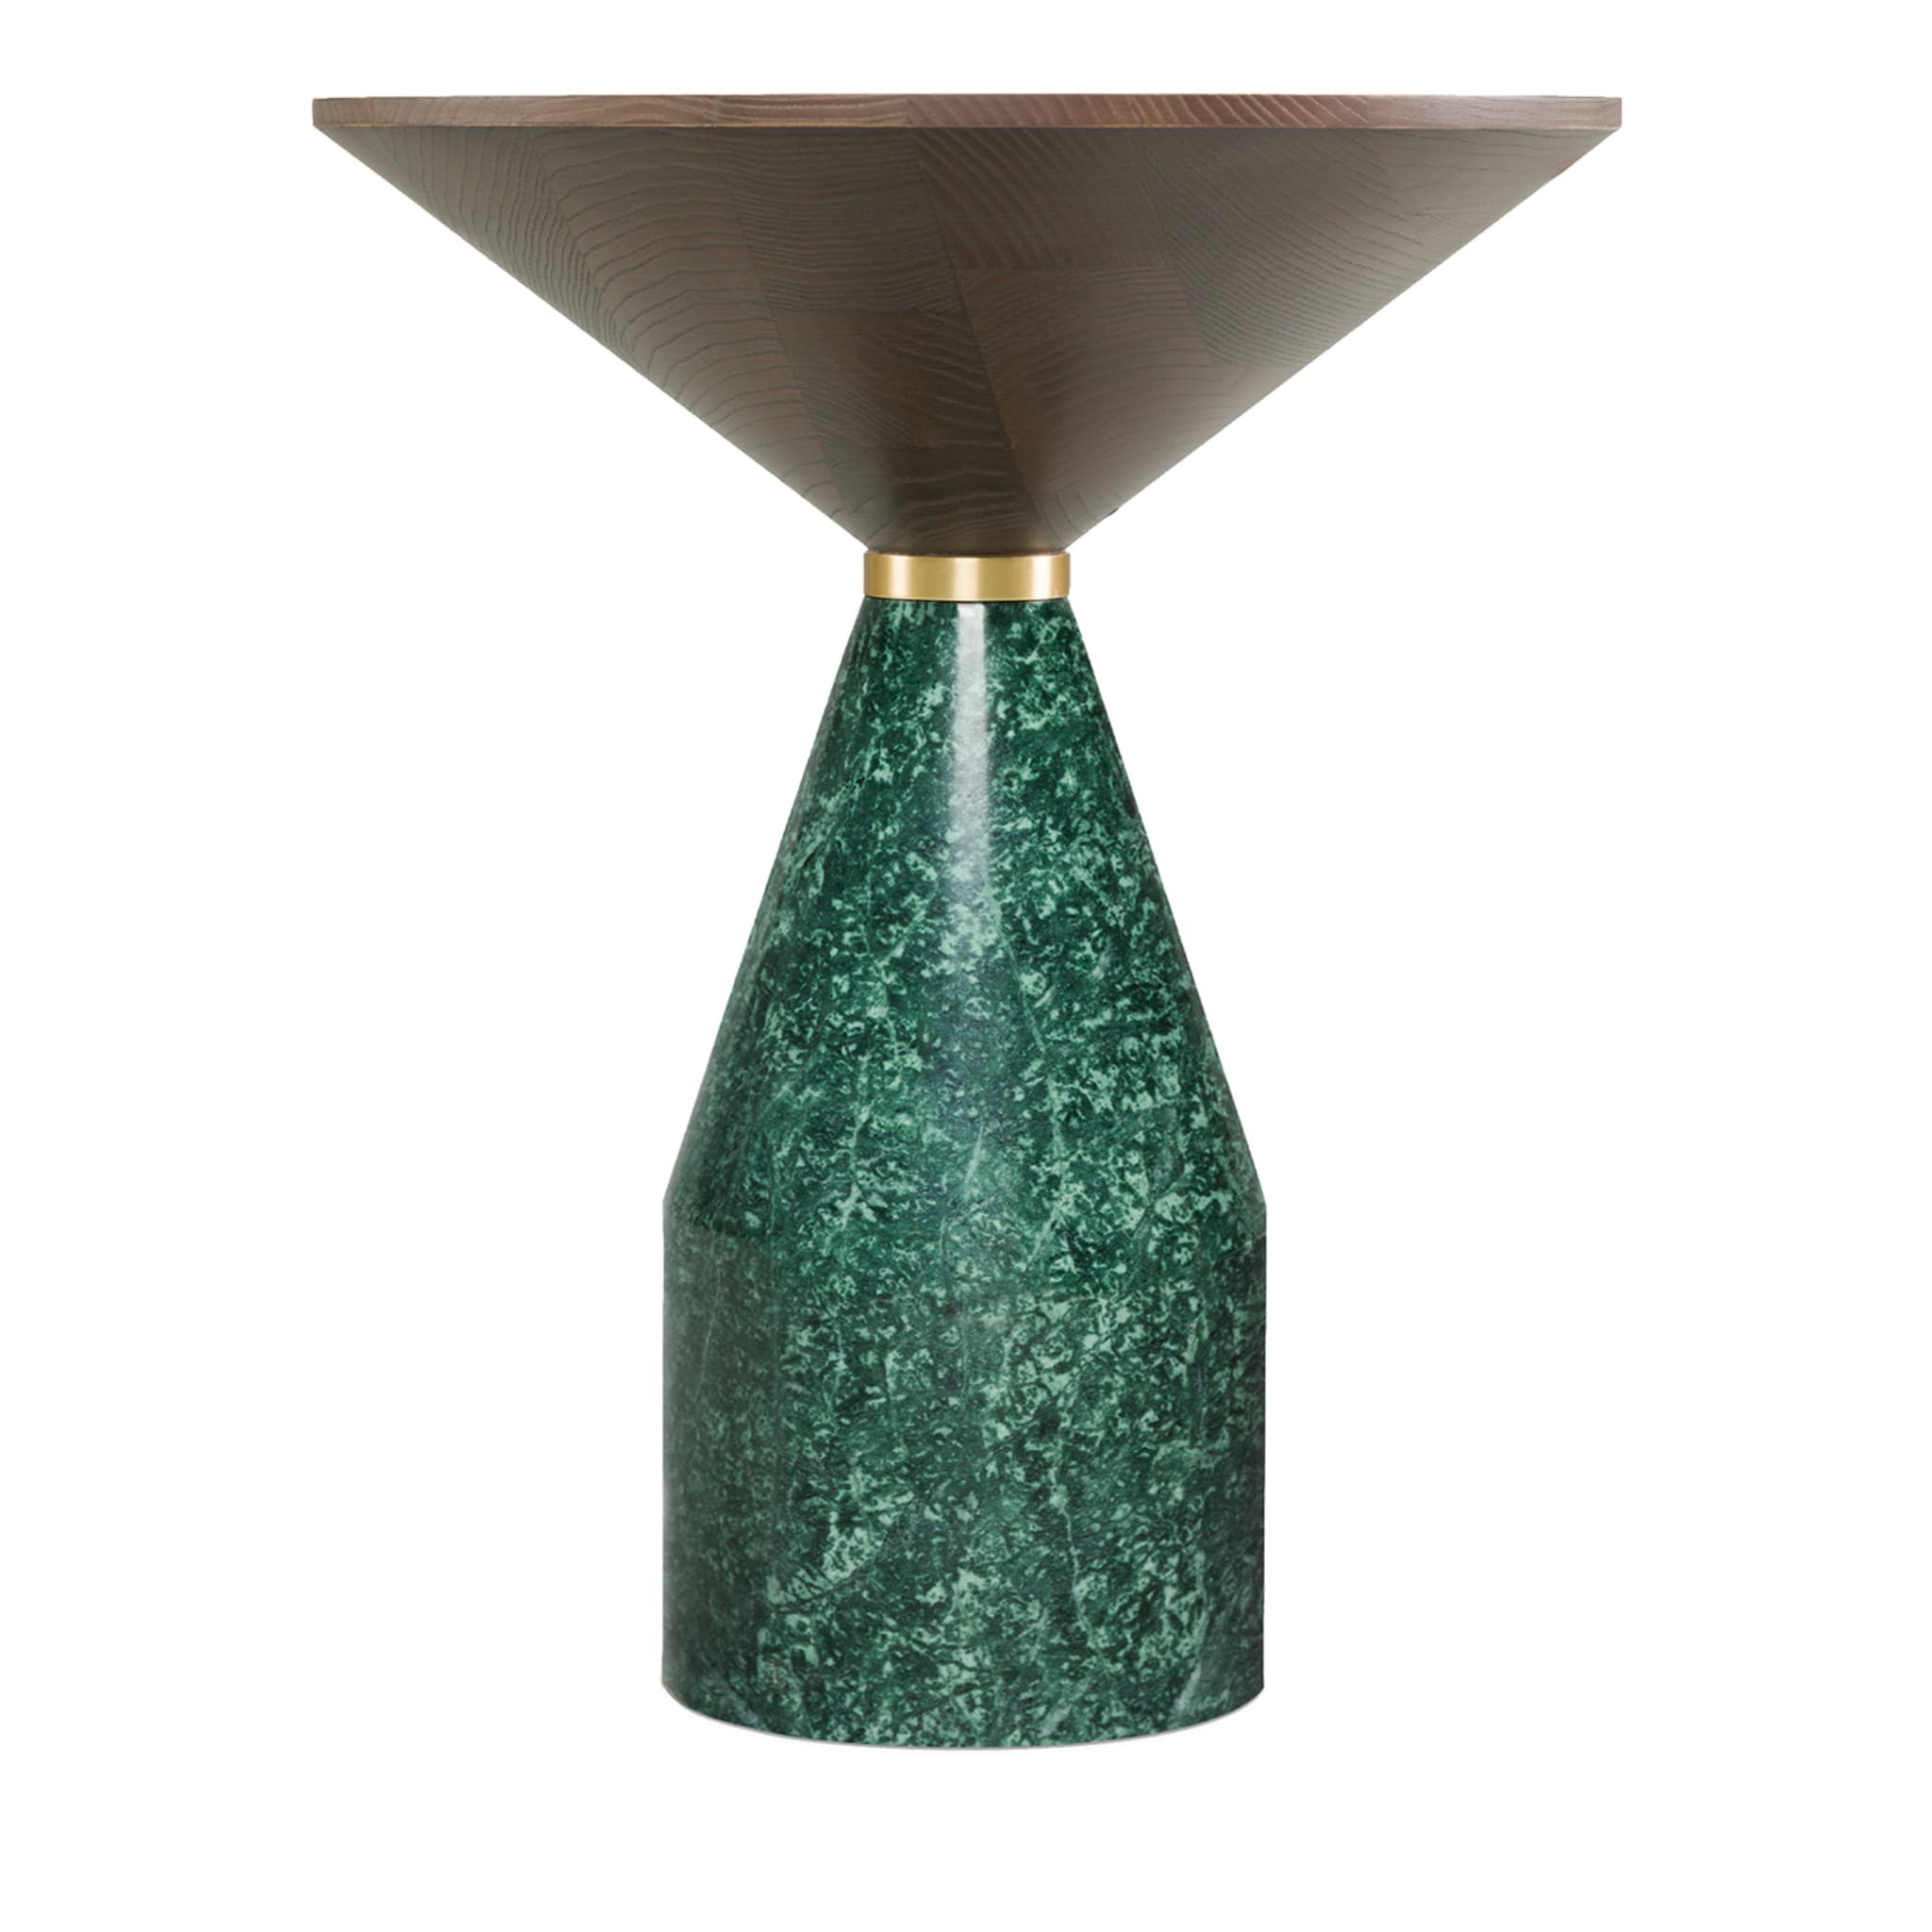 Petite table en marbre vert Cino - Vue principale